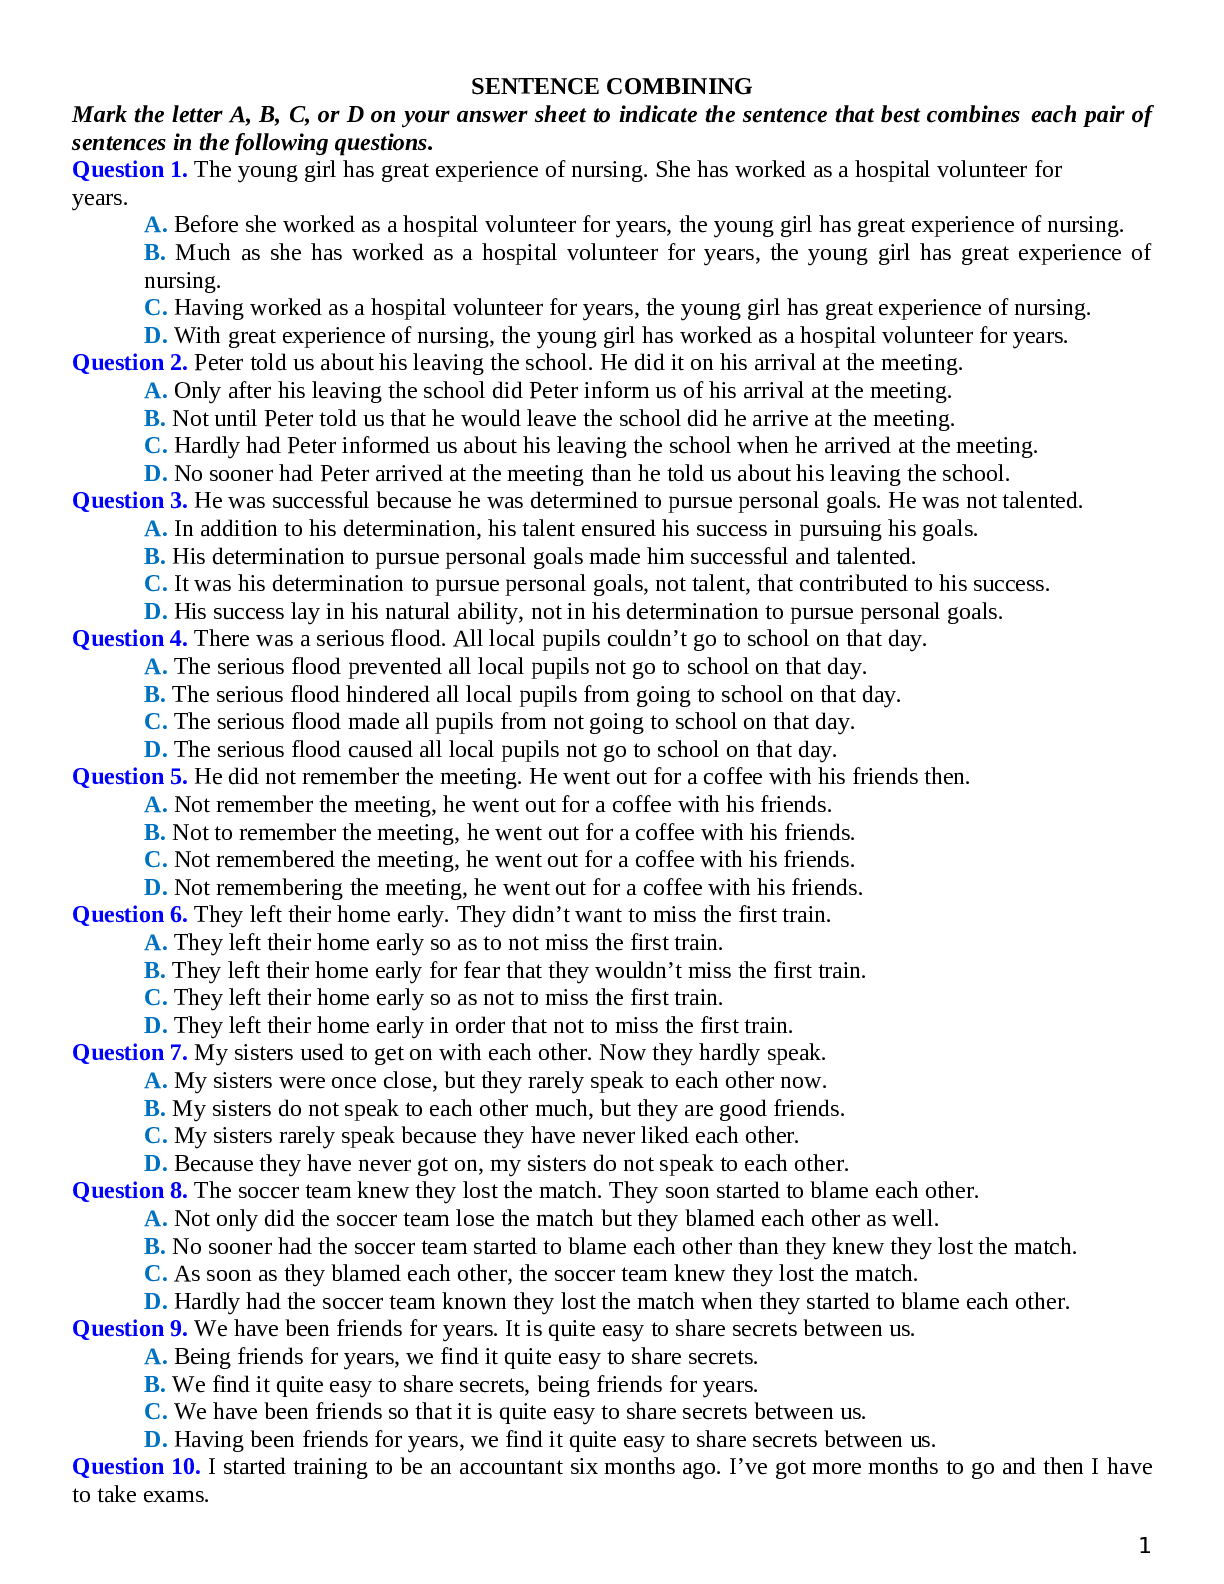 80 câu trắc nghiệm Tiếng Anh 12 dạng bài Sentence Combining chọn lọc (trang 1)